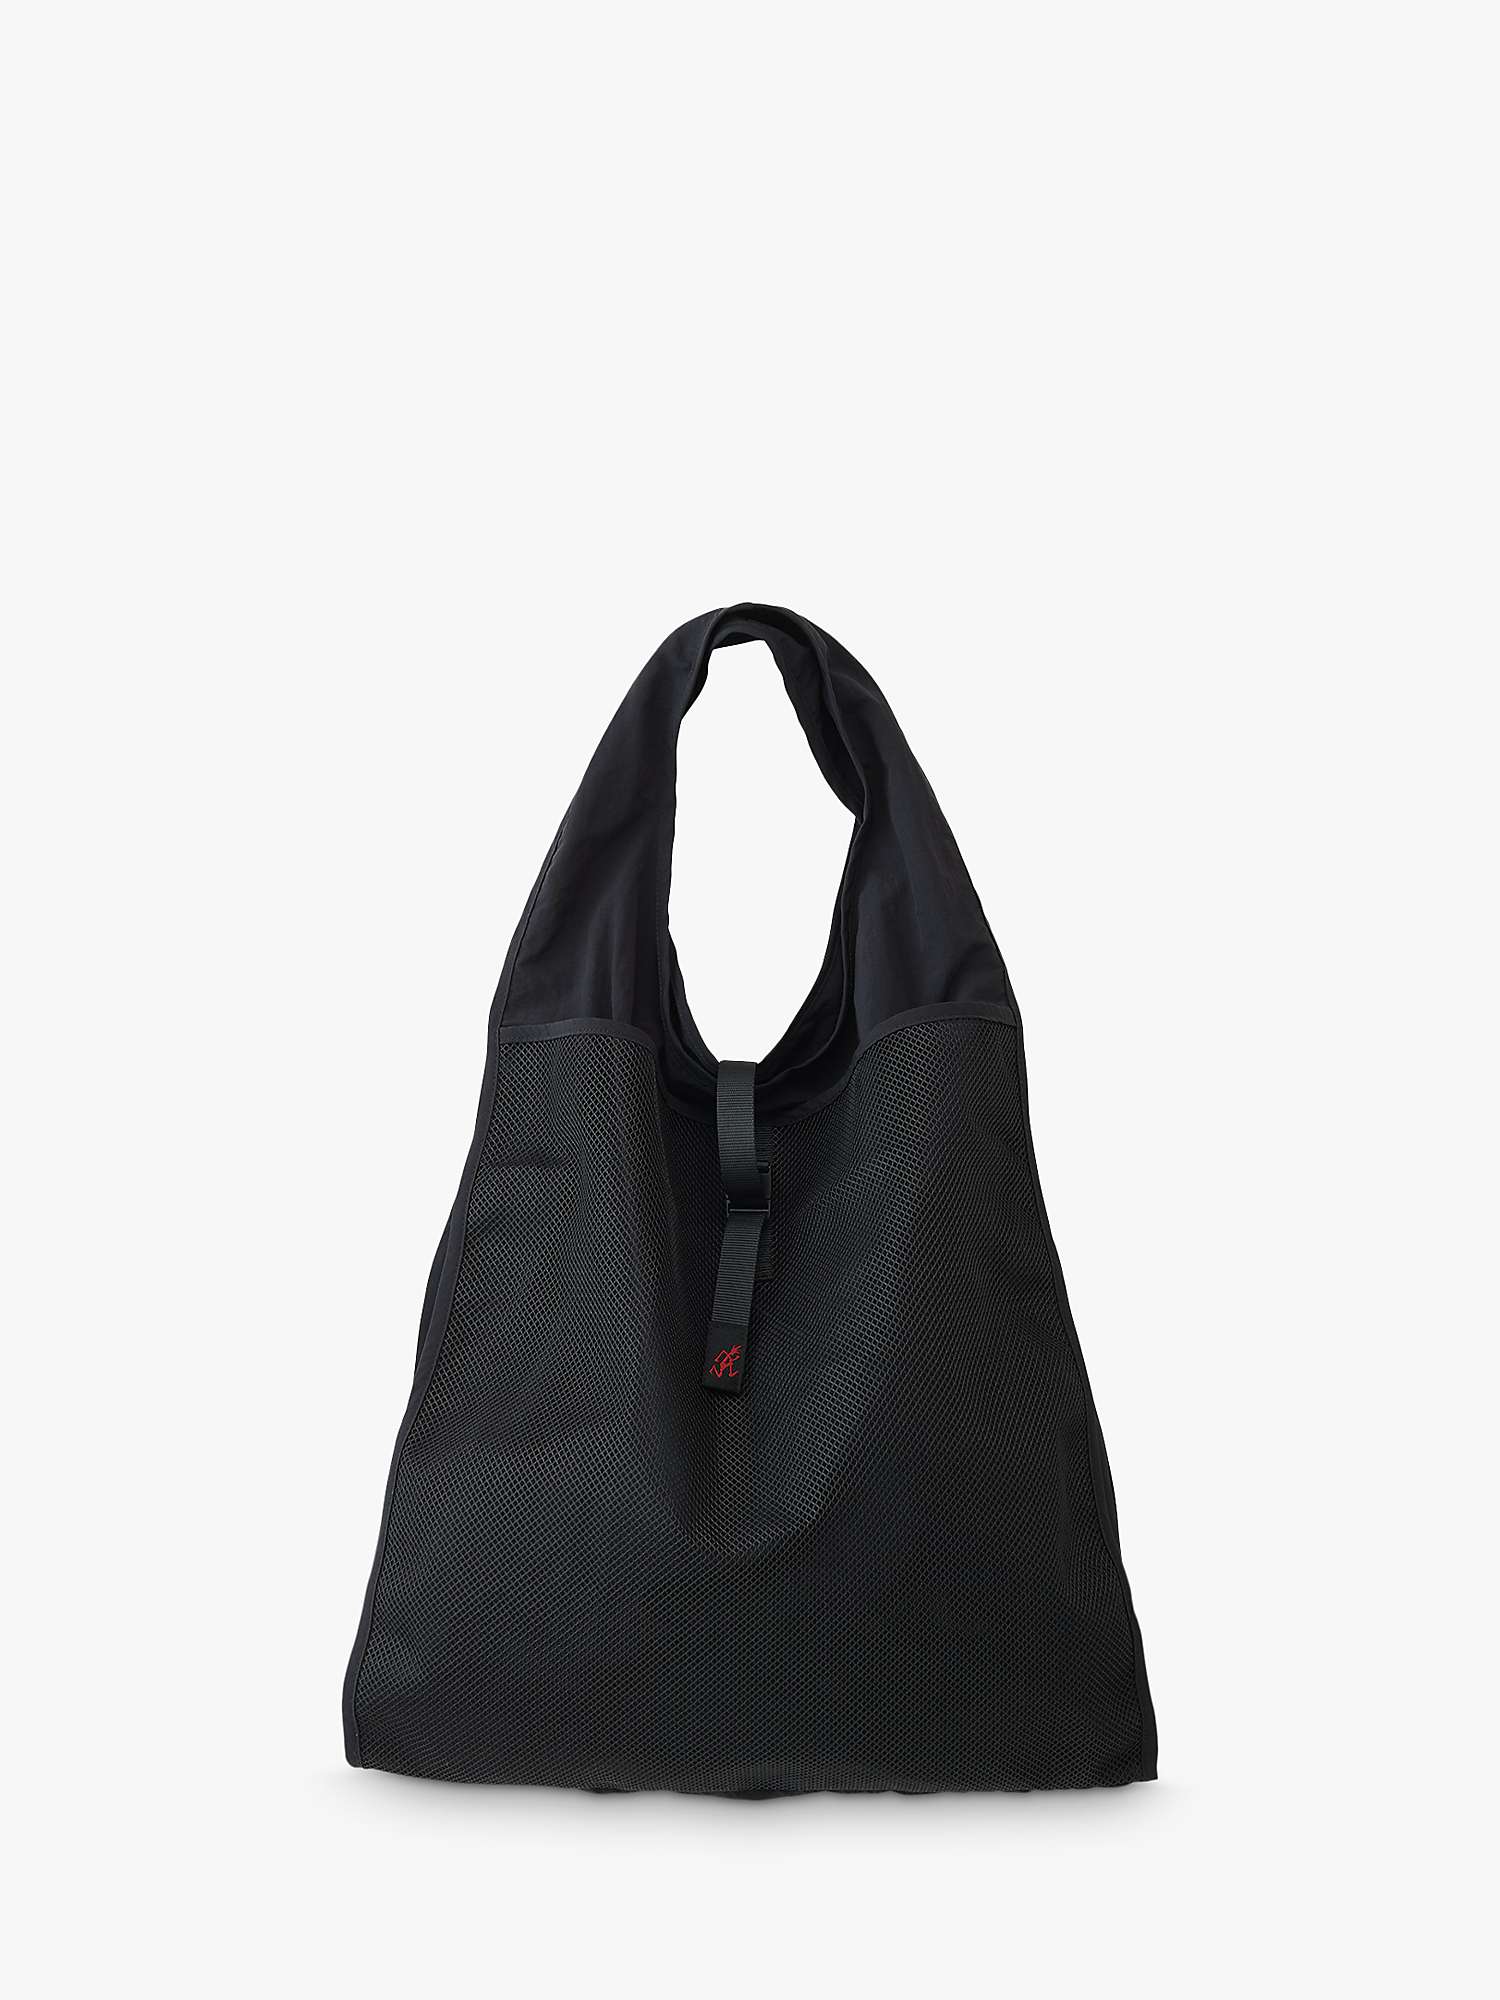 Buy Gramicci Daily Bag, Black Online at johnlewis.com